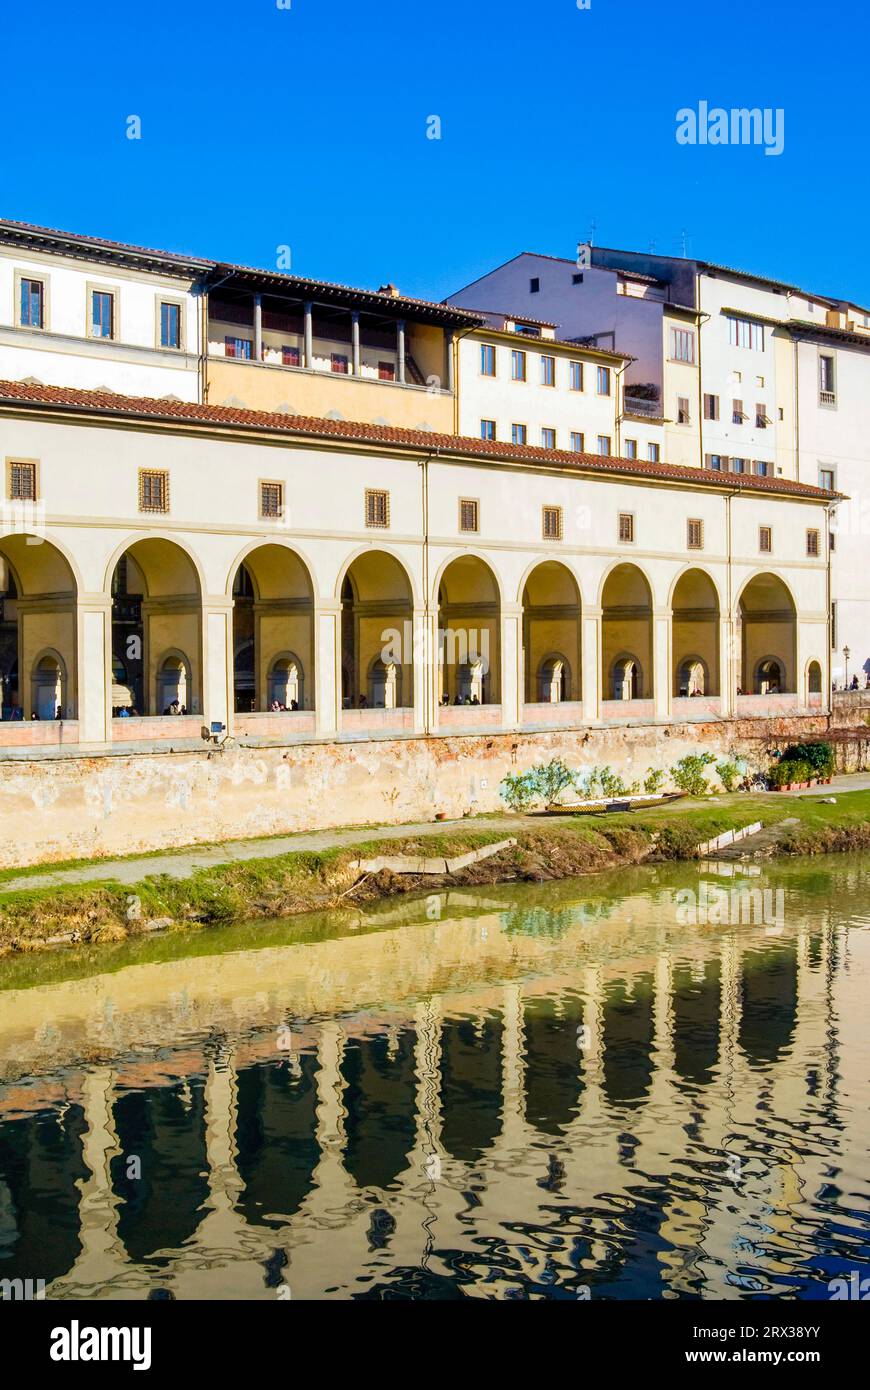 Loggiato et Corridoio Vasariano, Uffizi, Florence (Florence), site du patrimoine mondial de l'UNESCO, Toscane, Italie, Europe Banque D'Images